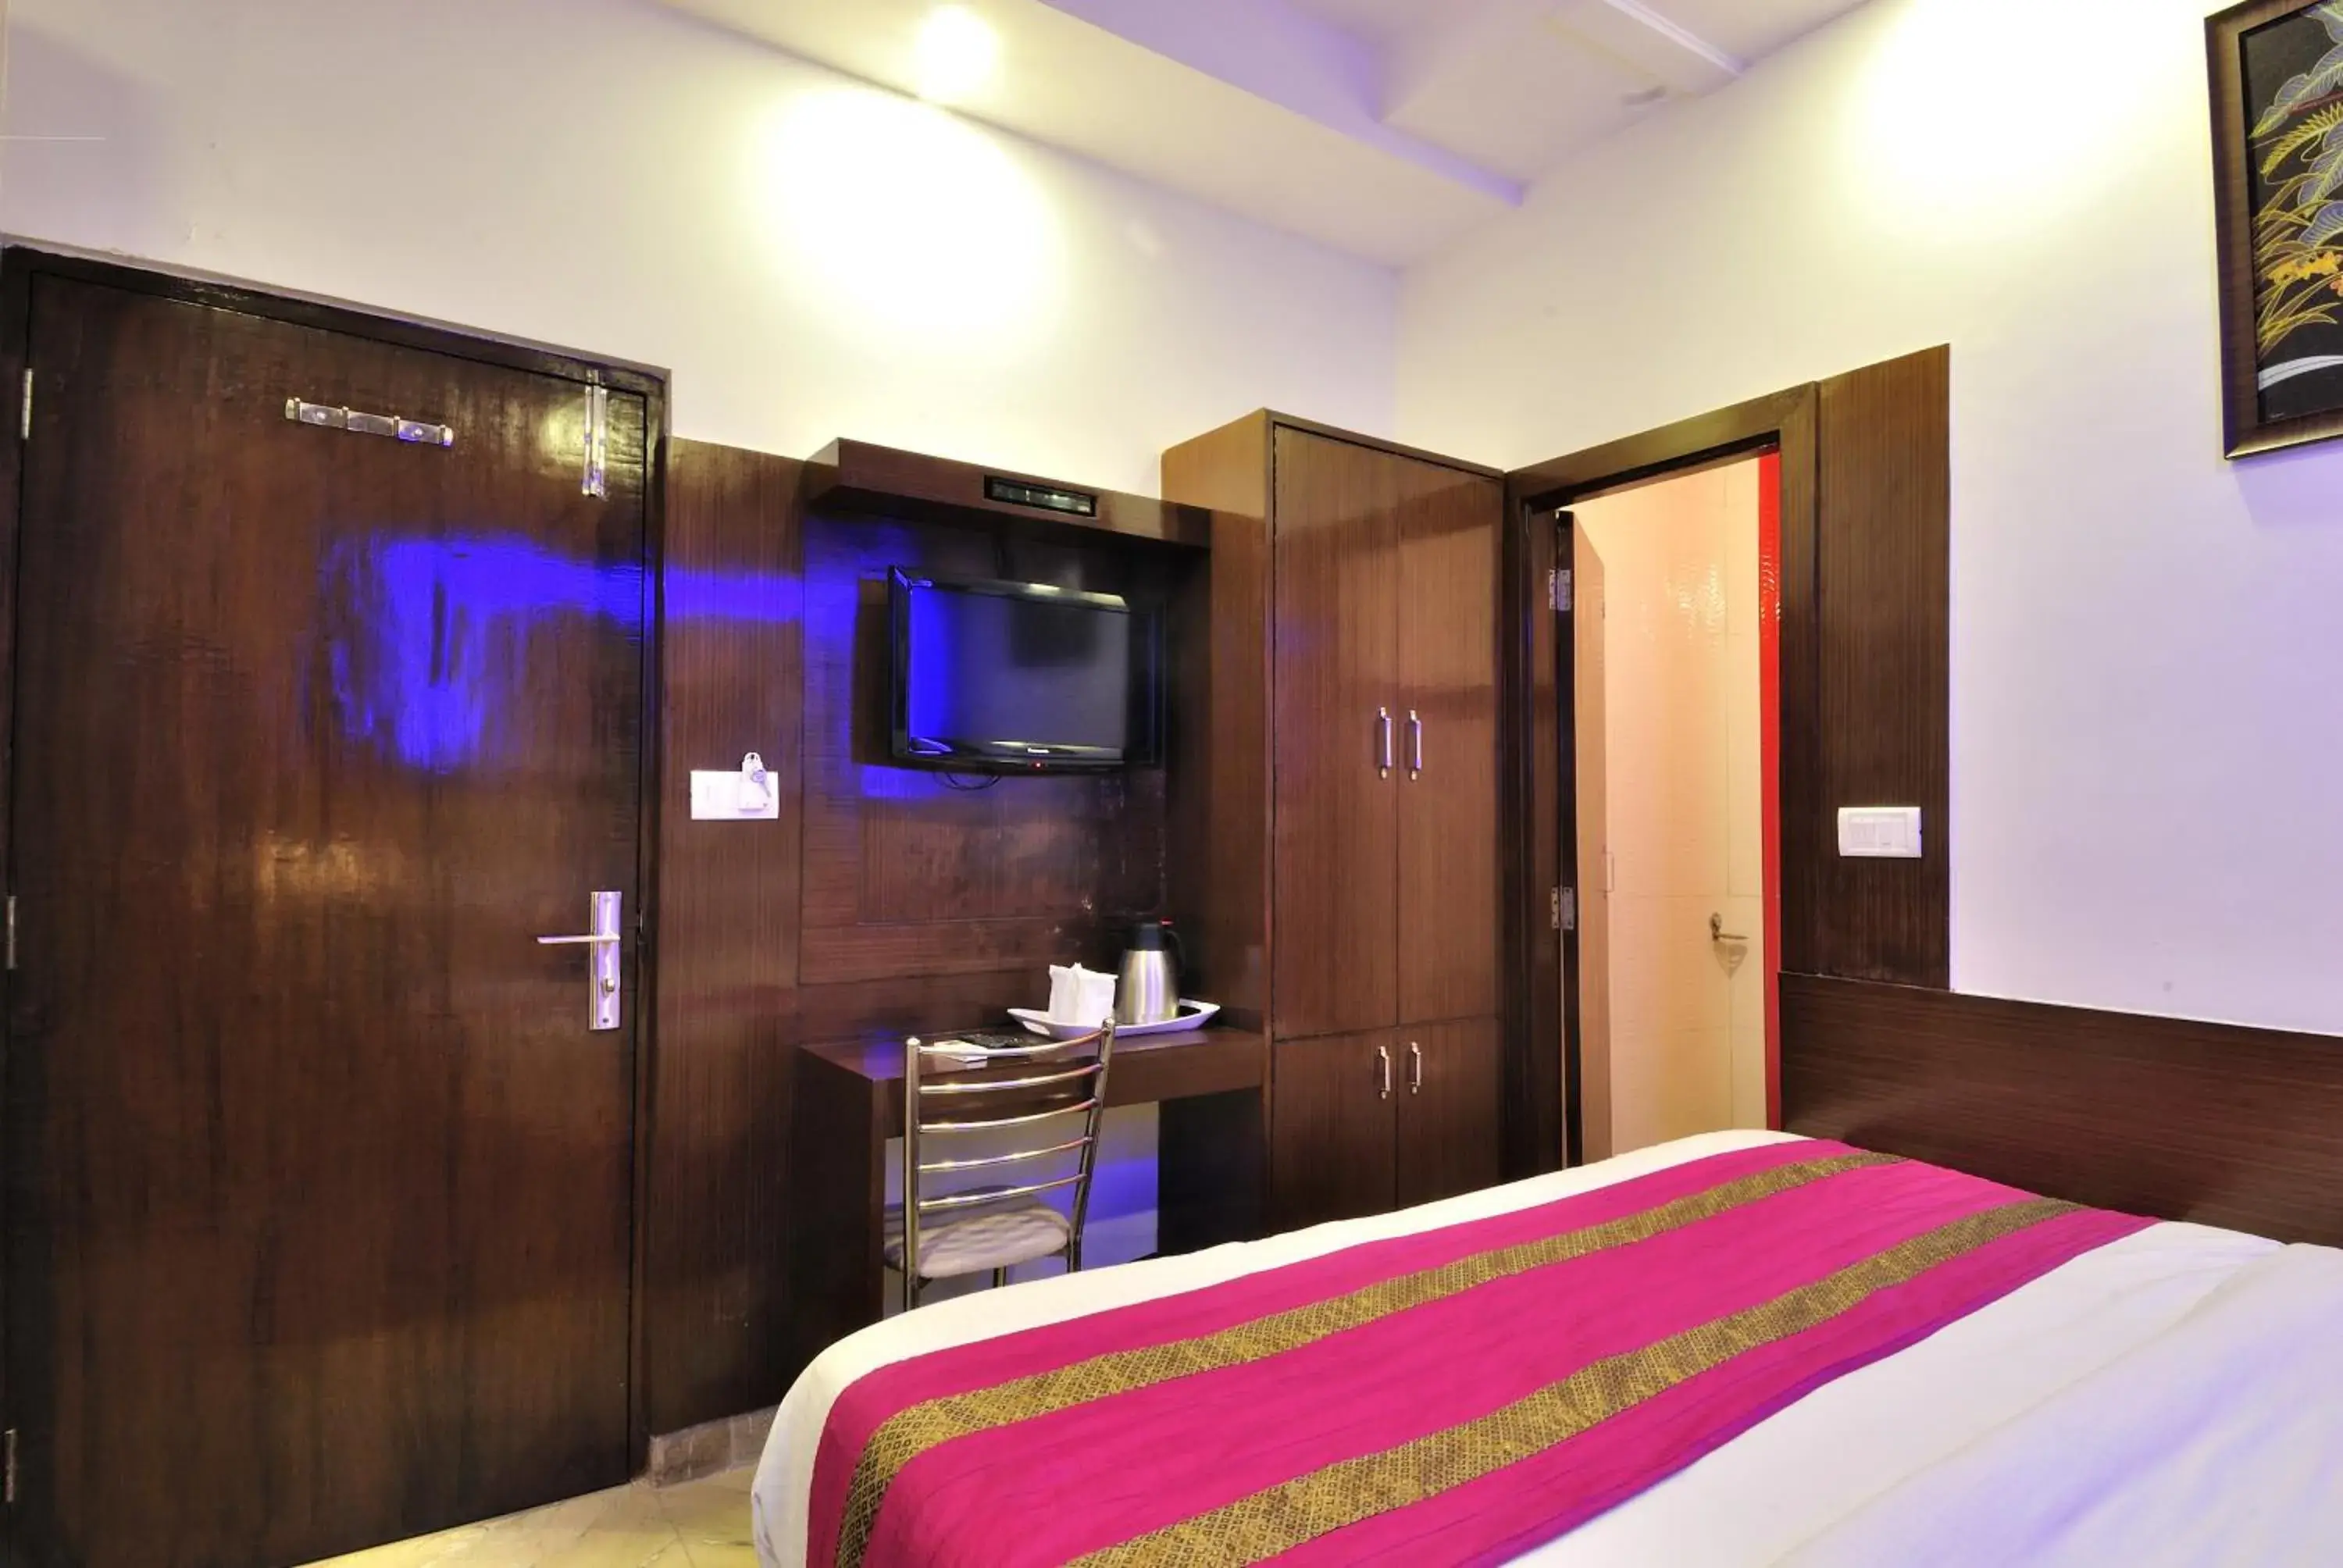 Bedroom, Bathroom in Hotel Nirmal Mahal by Sushant Travels